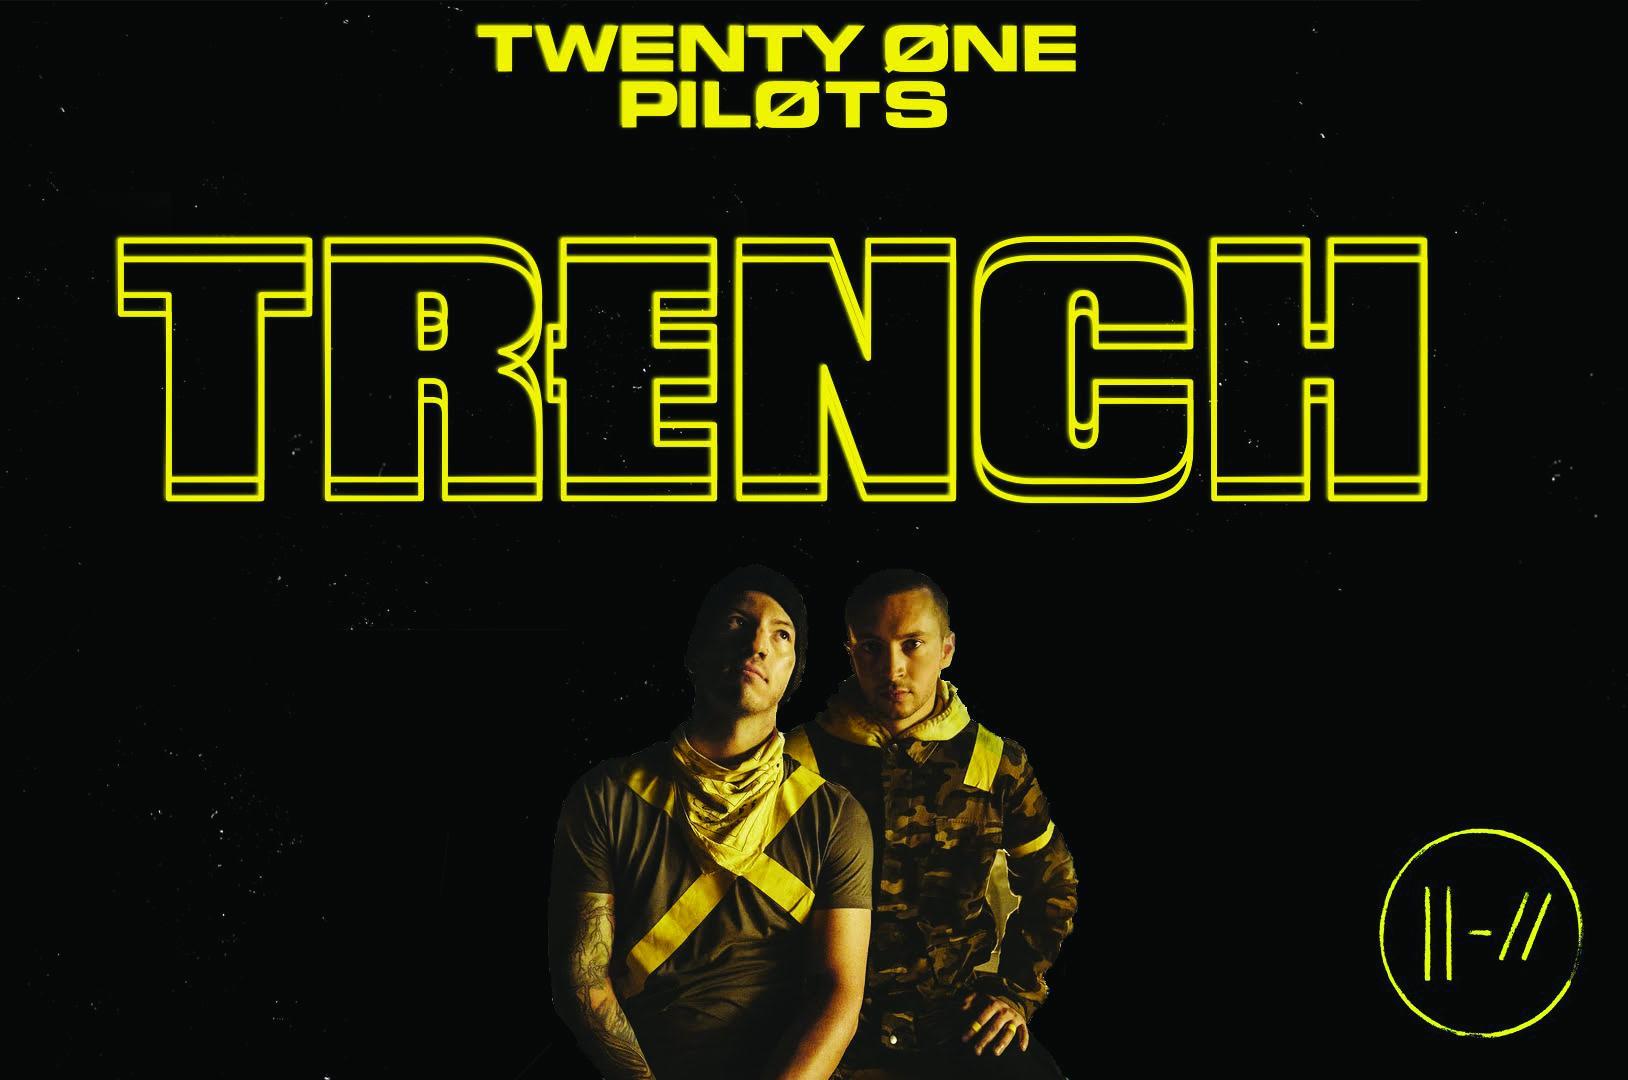 Twenty One Pilots releases new album: Trench